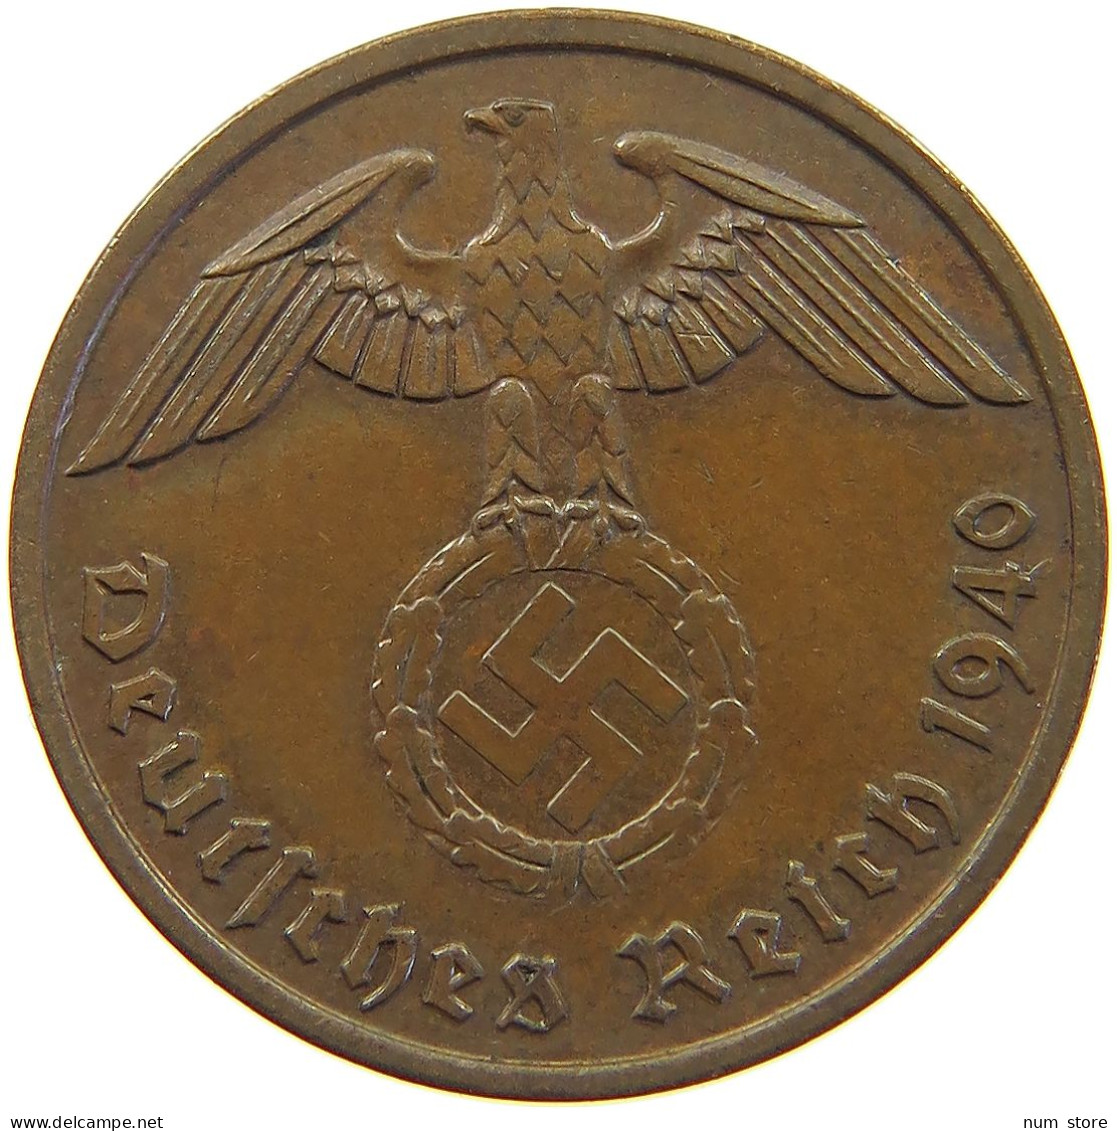 GERMANY 2 PFENNIG 1940 A #a054 0495 - 2 Reichspfennig